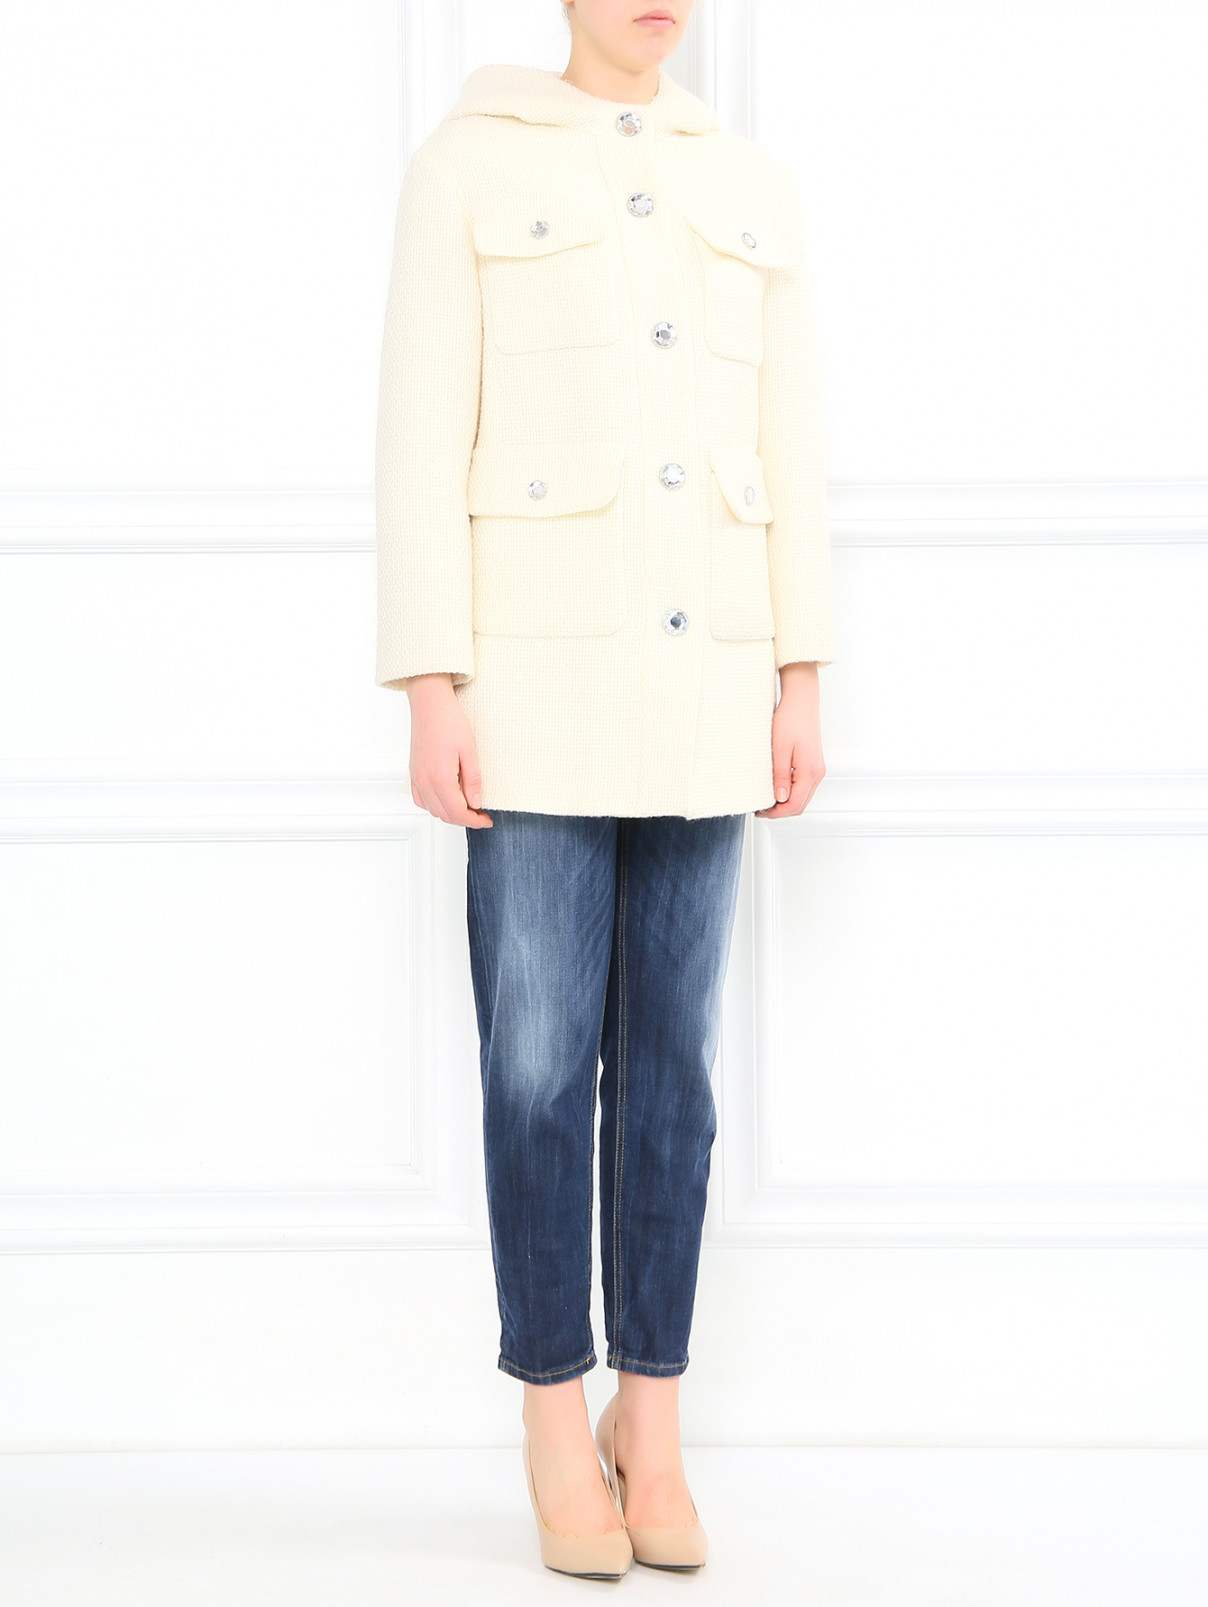 Пальто из шерсти с накладными карманами Moschino Cheap&Chic  –  Модель Общий вид  – Цвет:  Белый